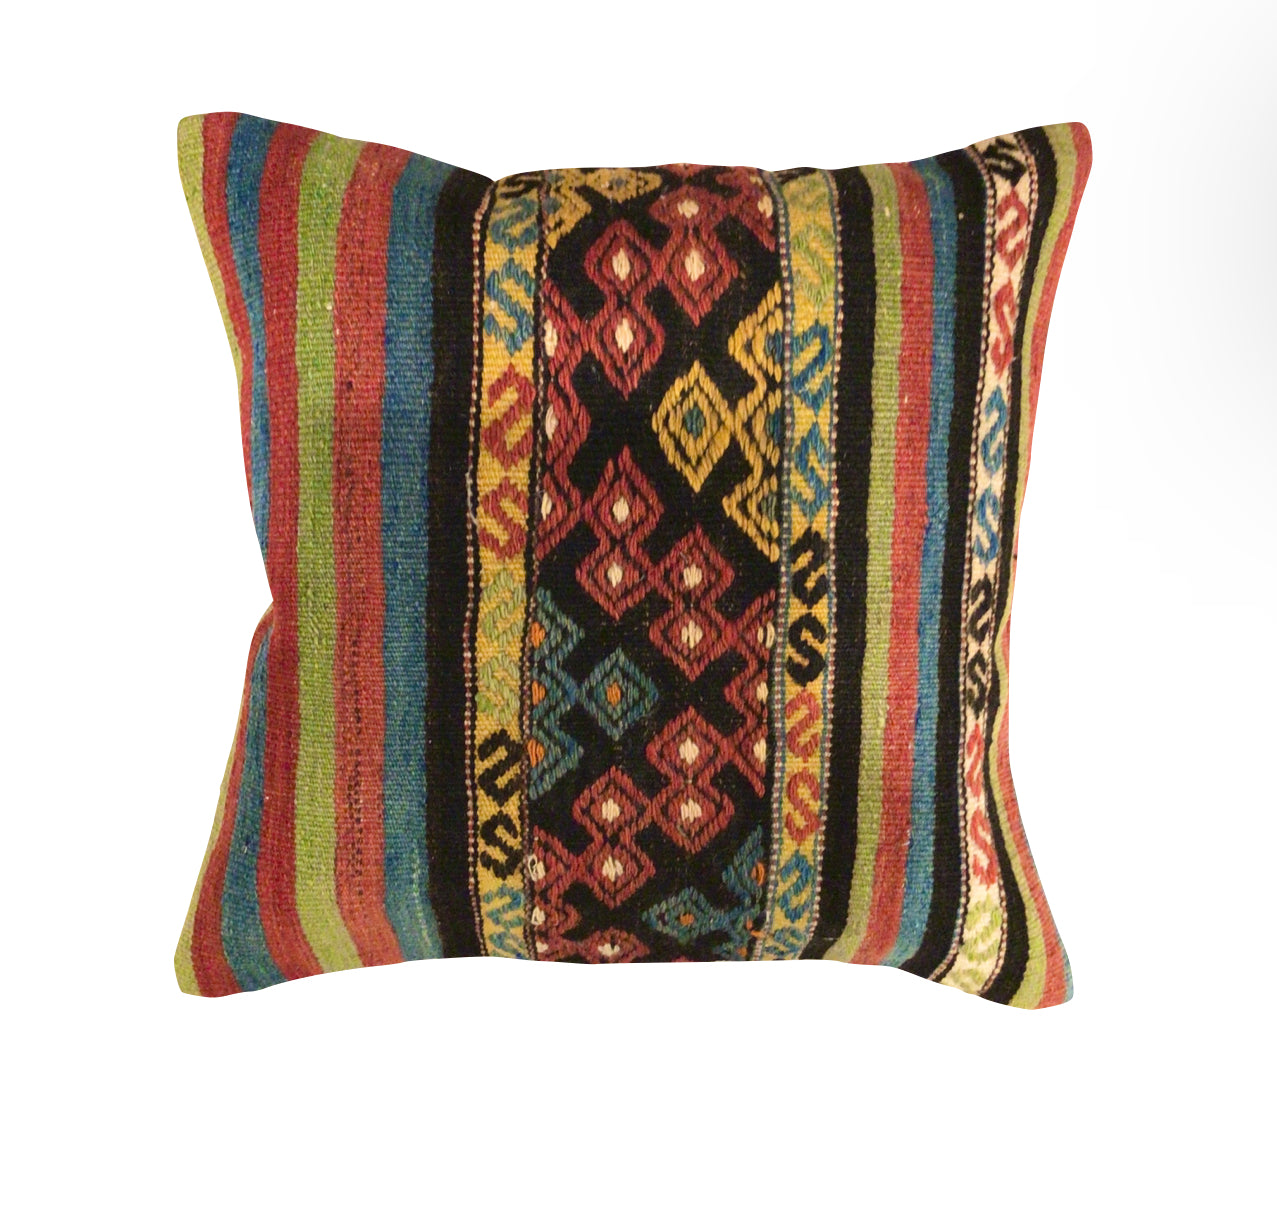 Vintage Turkish Kilim Pillow - Medium